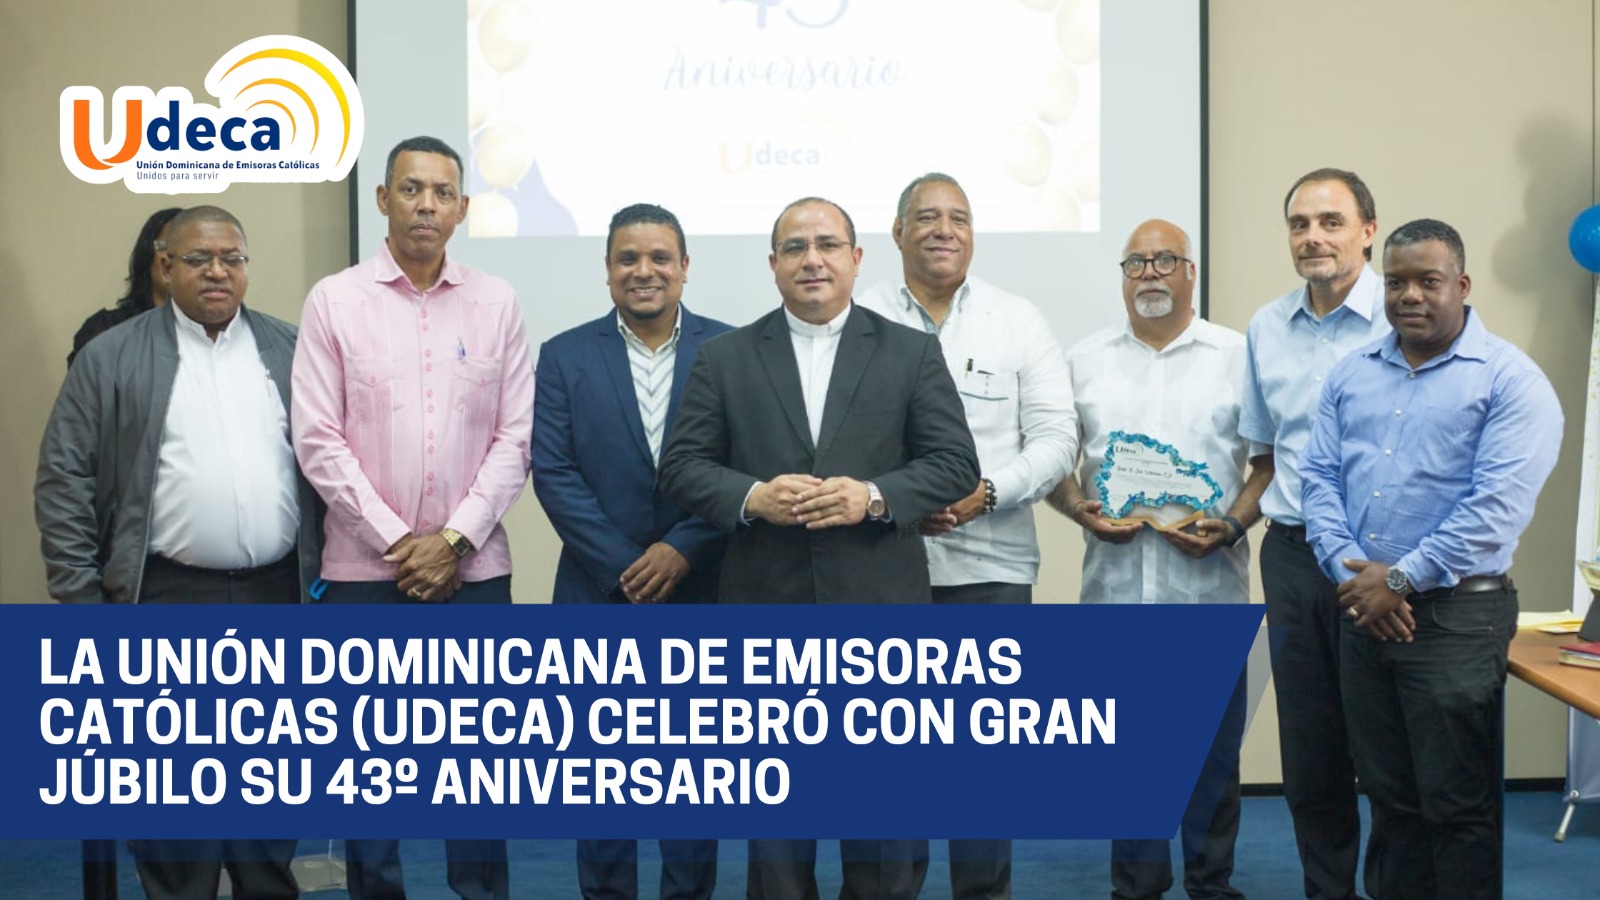 La Unión Dominicana de Emisoras Católicas “UDECA” Celebra con Júbilo su 43 Aniversario